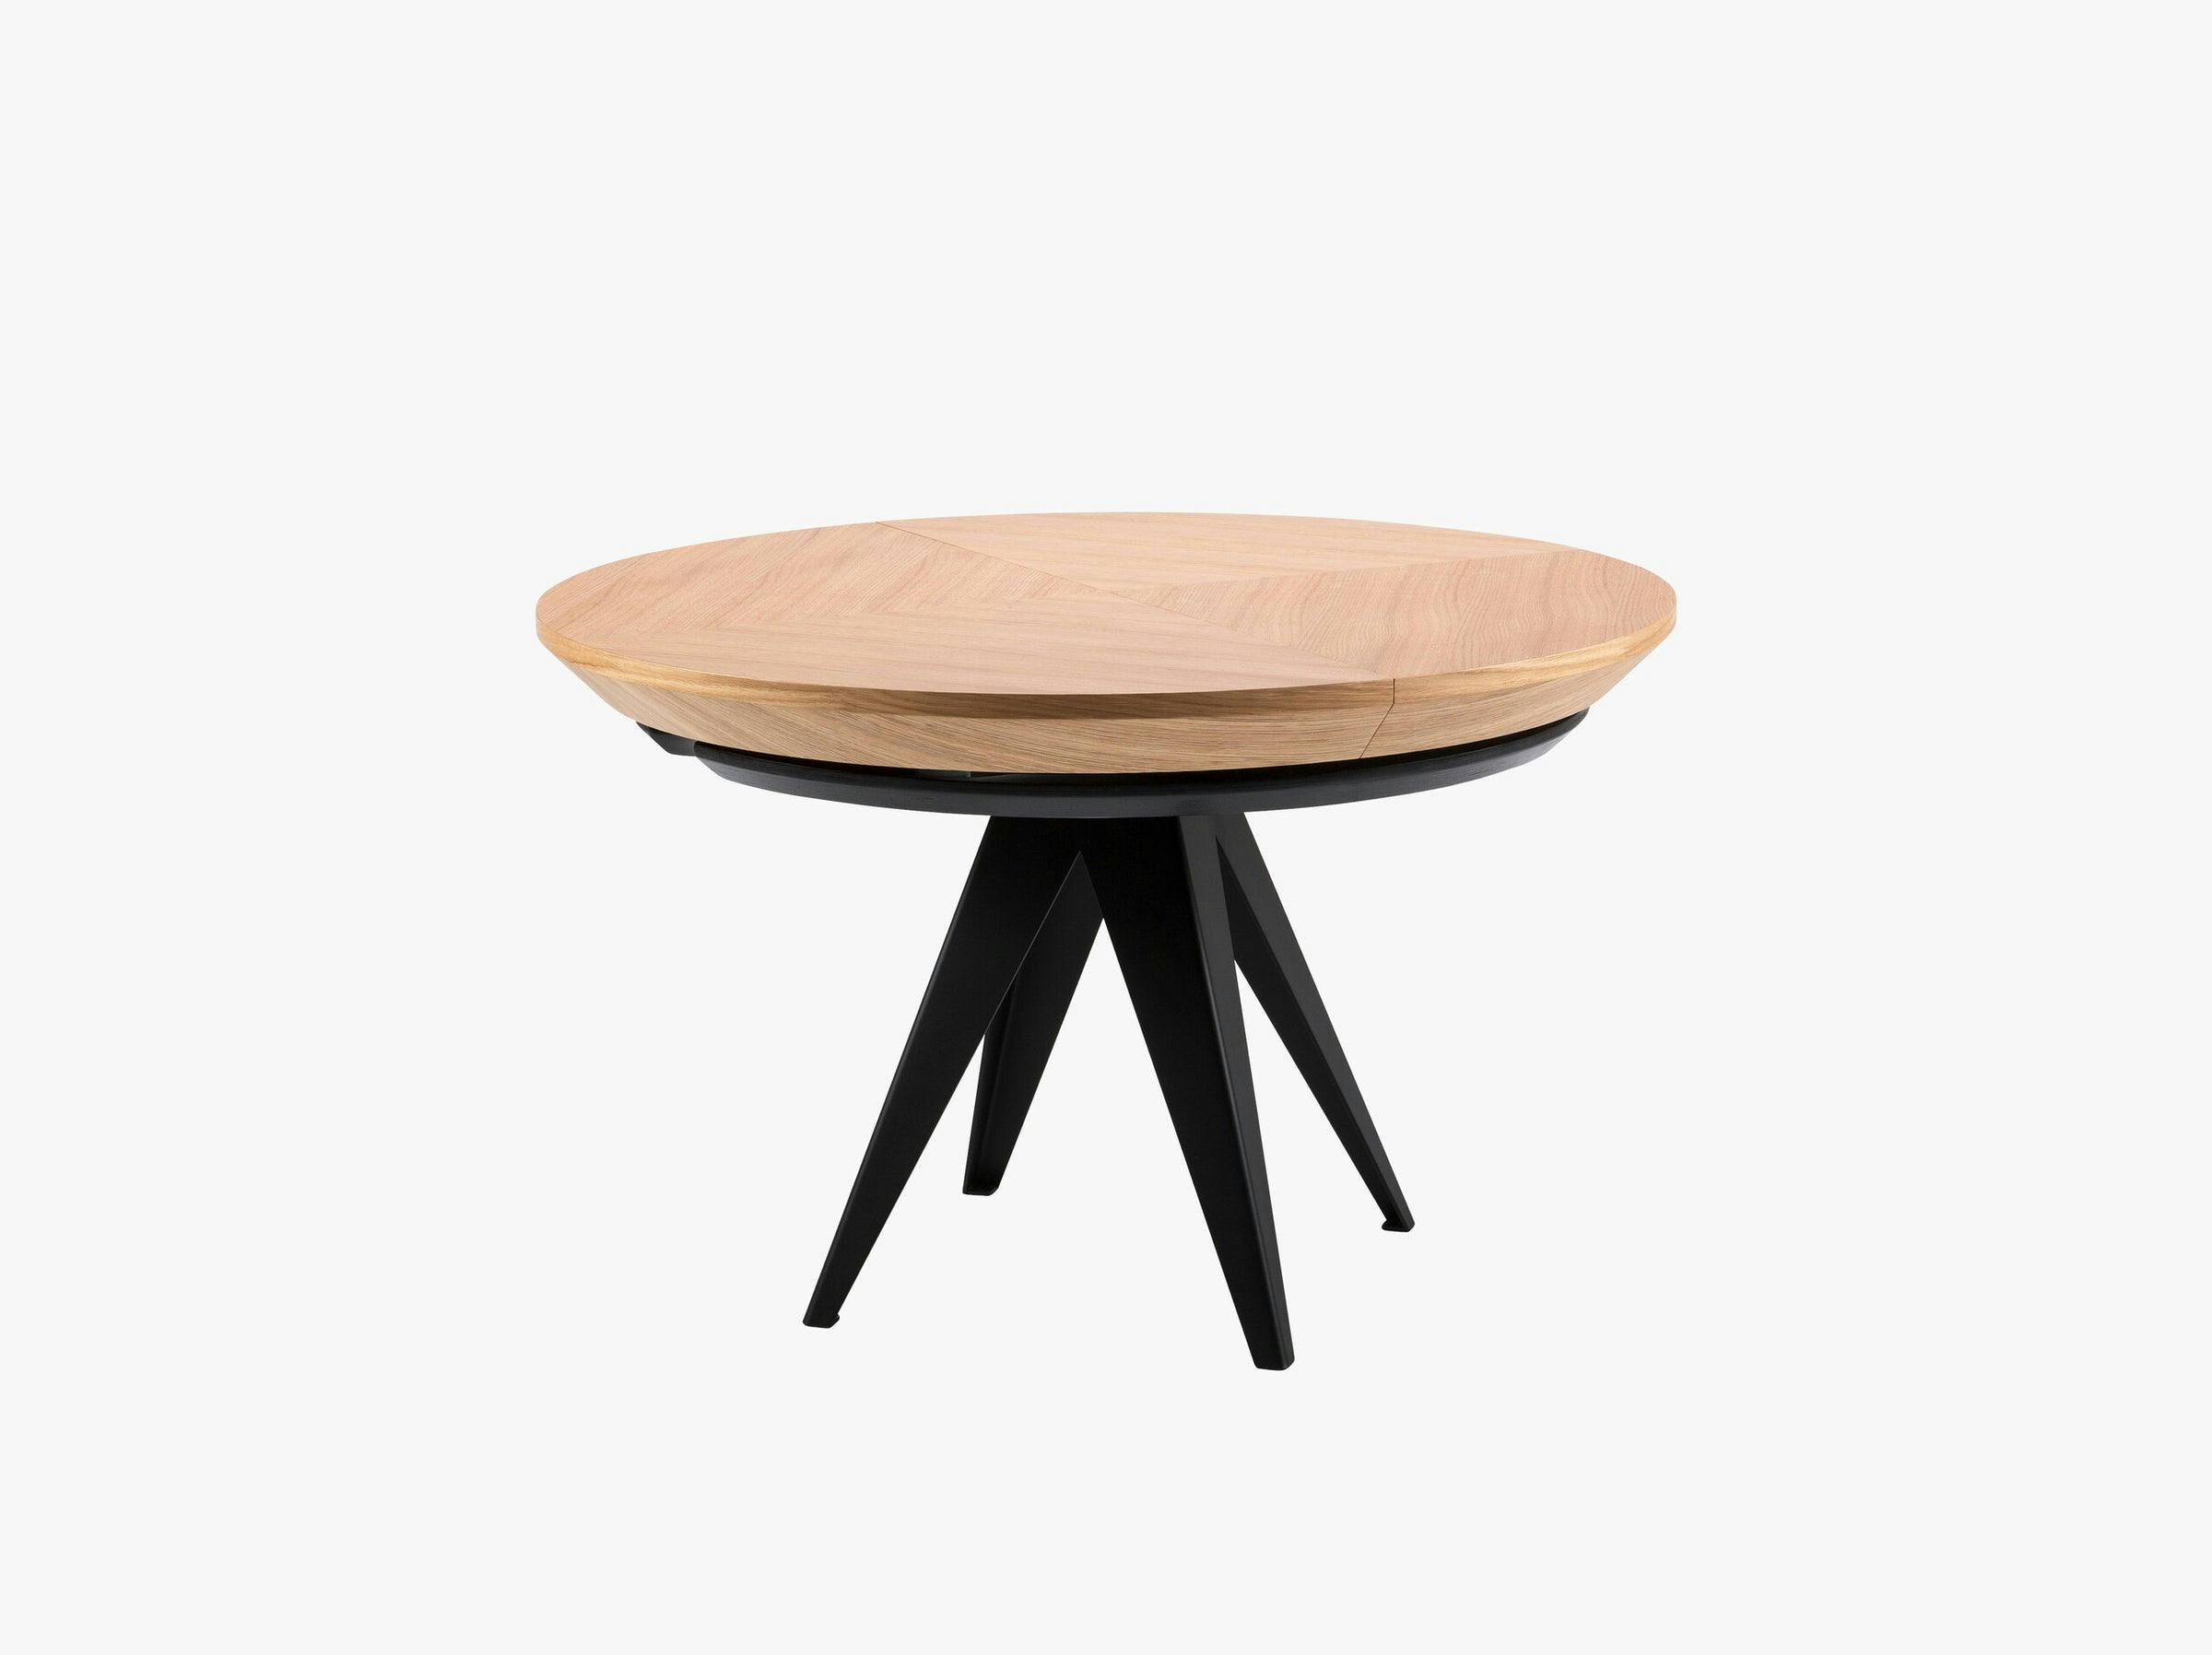 Toni tables & chairs wood natural oak veneer